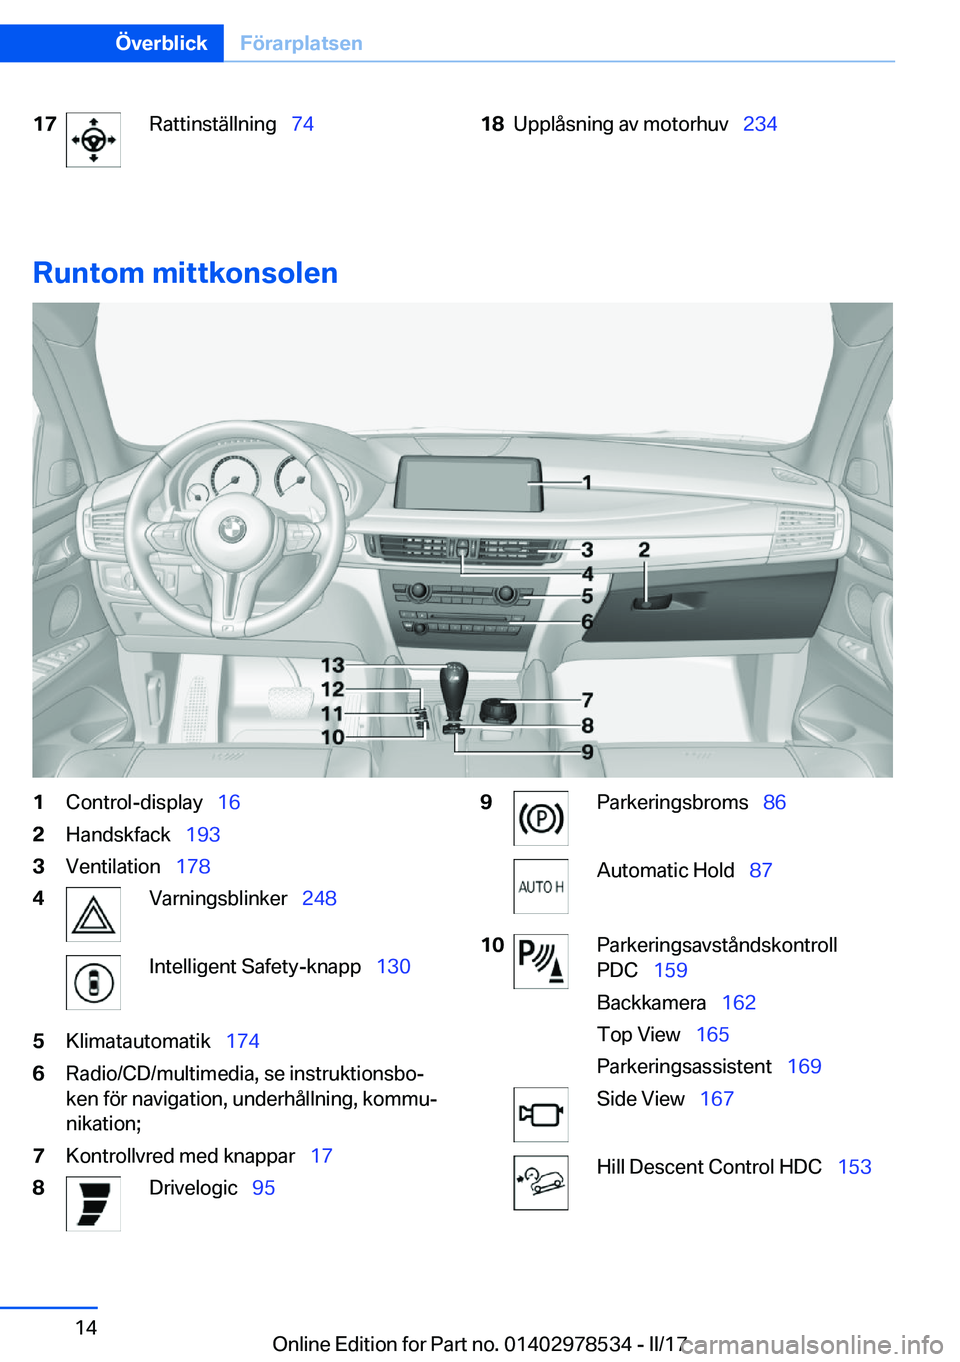 BMW X6 M 2017  InstruktionsbÖcker (in Swedish) �1�7�R�a�t�t�i�n�s�t�ä�l�l�n�i�n�g\_�7�4�1�8�U�p�p�l�å�s�n�i�n�g� �a�v� �m�o�t�o�r�h�u�v\_ �2�3�4
�R�u�n�t�o�m��m�i�t�t�k�o�n�s�o�l�e�n
�1�C�o�n�t�r�o�l�-�d�i�s�p�l�a�y\_�1�6�2�H�a�n�d�s�k�f�